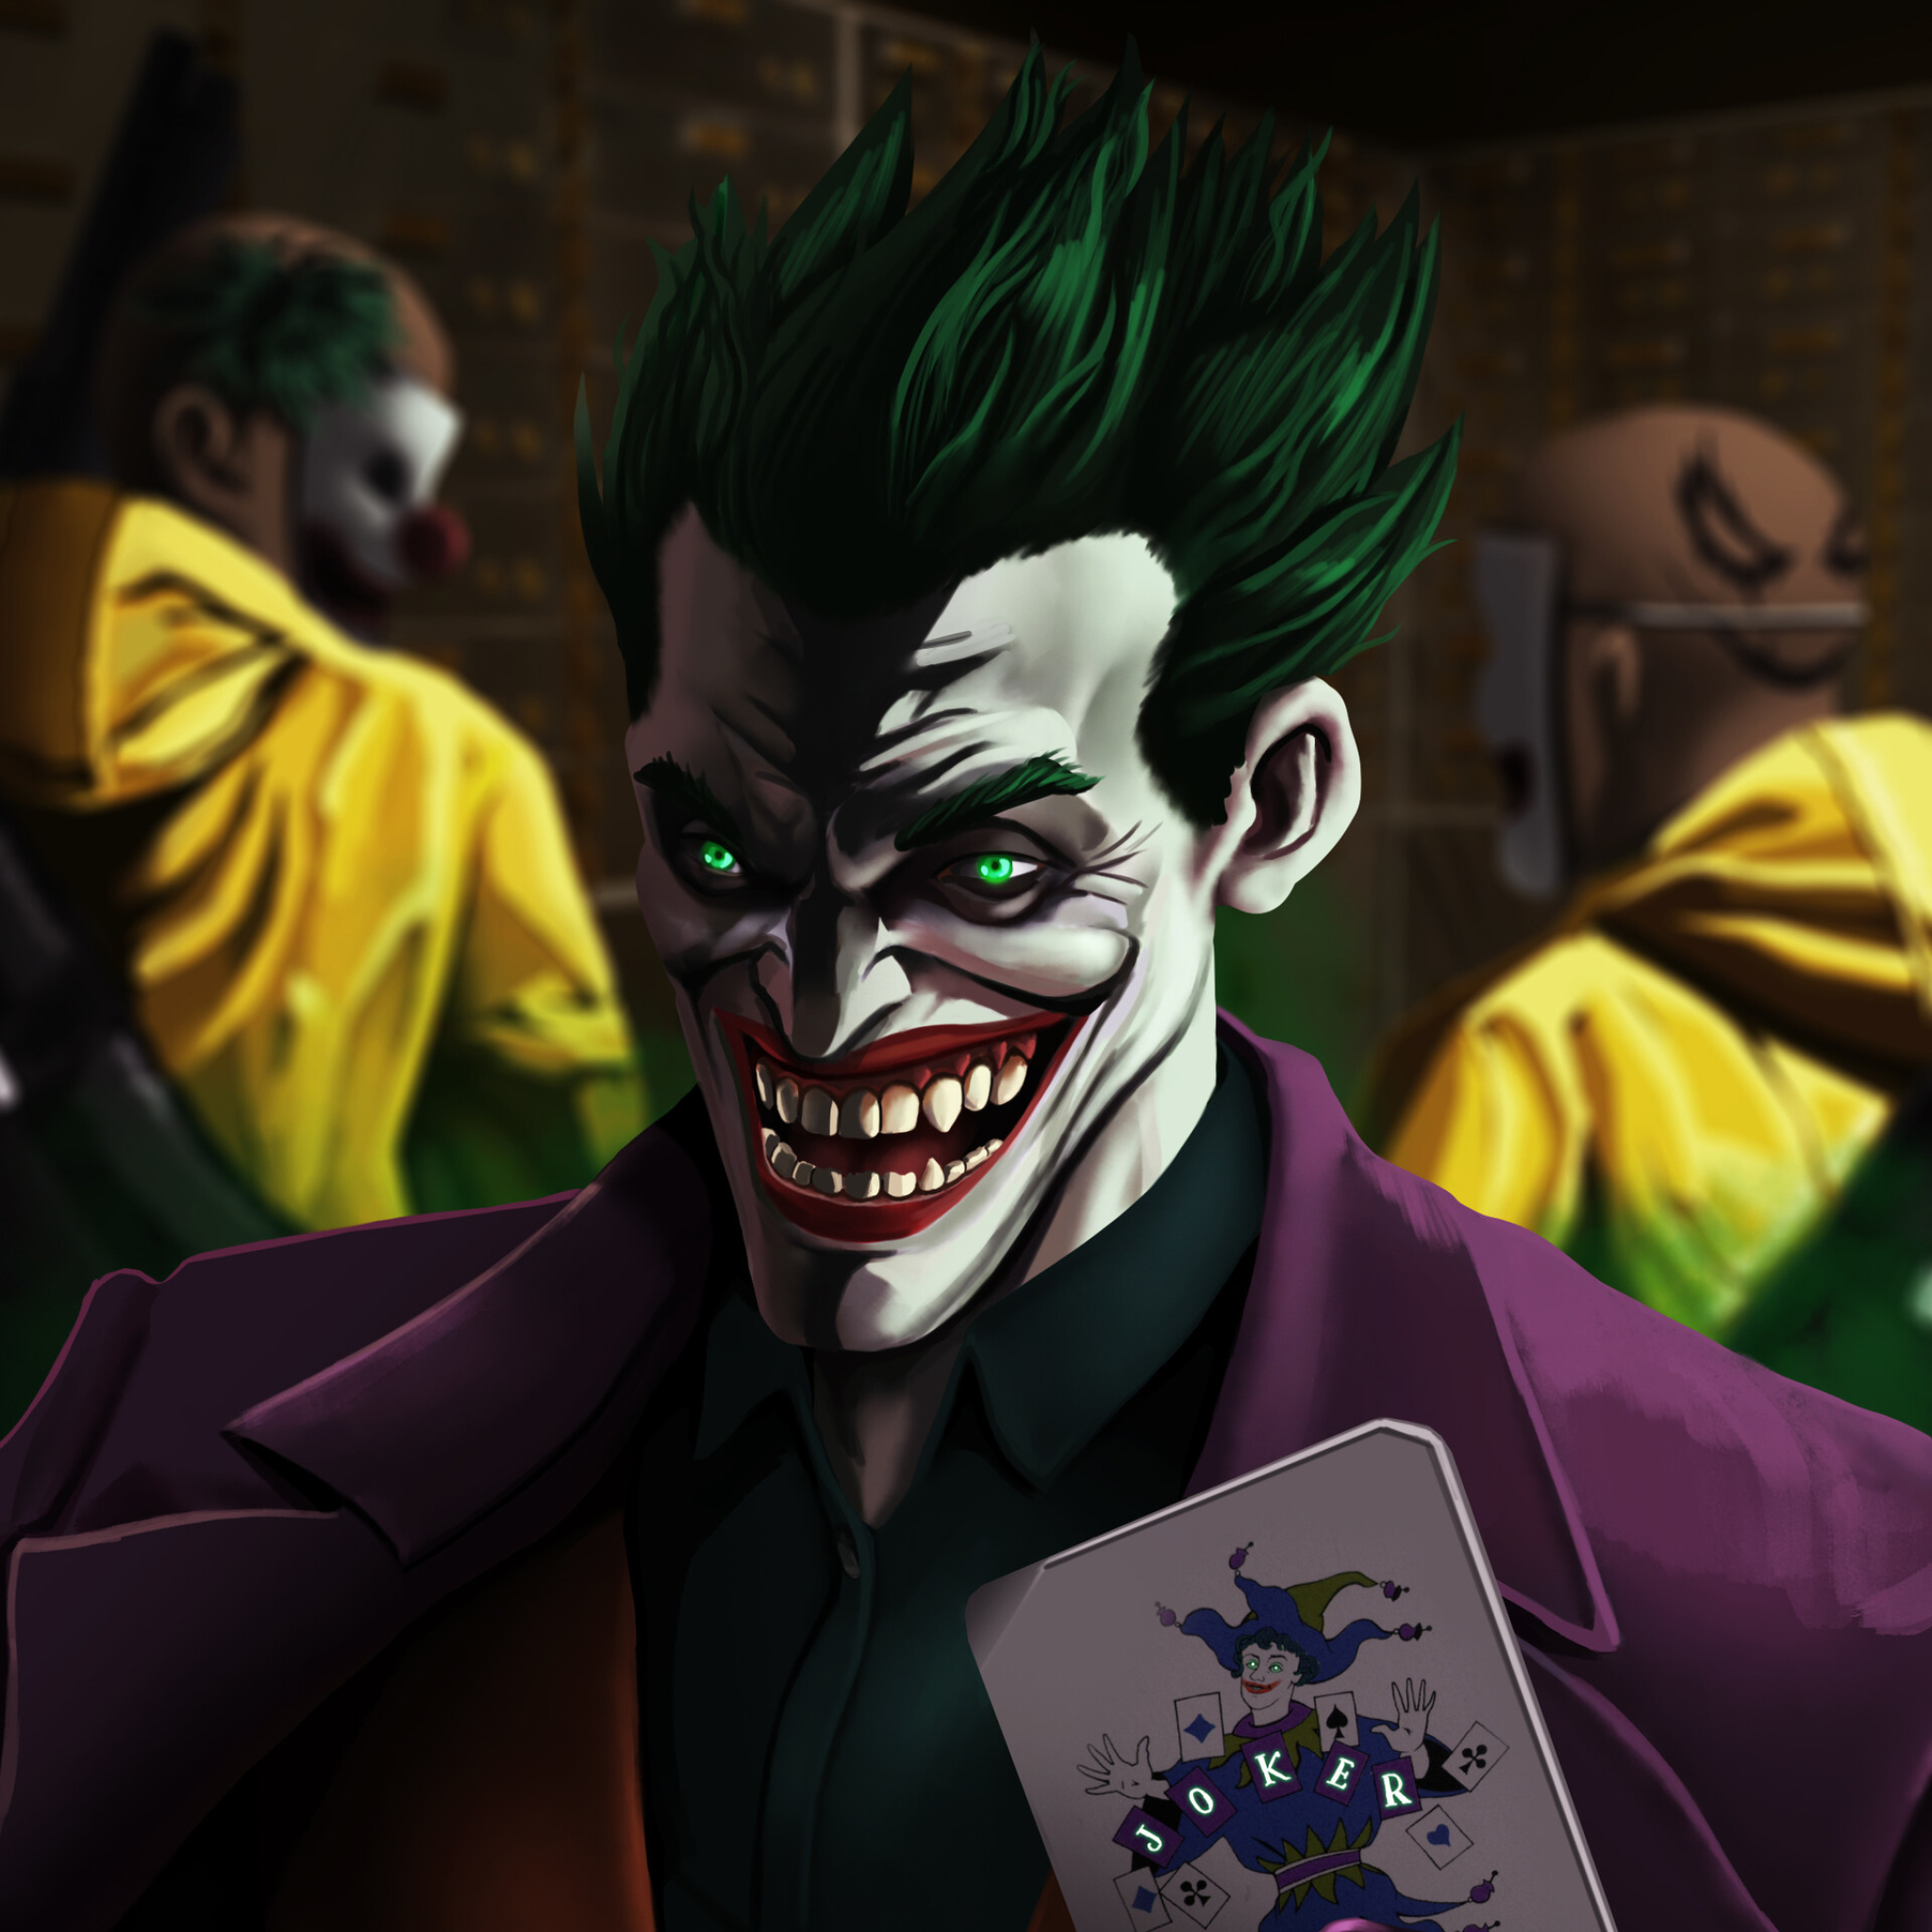 2048x2048 Resolution An Evil Joker Laugh Ipad Air Wallpaper ...